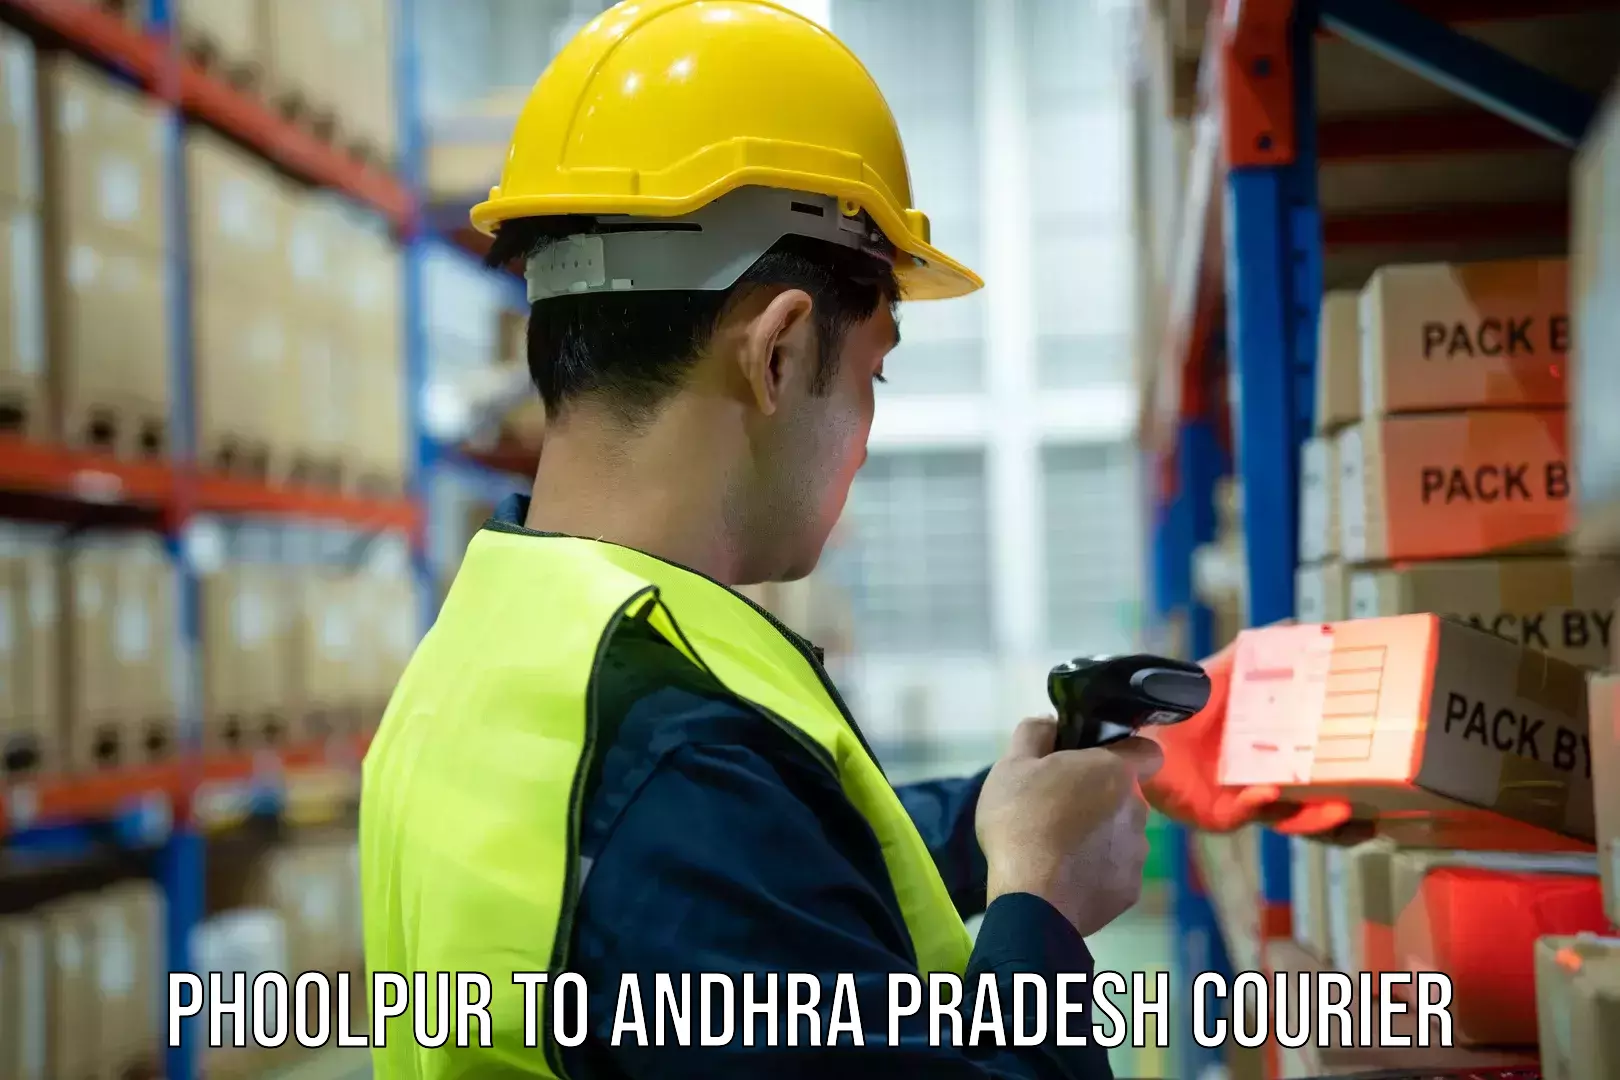 Courier service efficiency Phoolpur to Andhra Pradesh